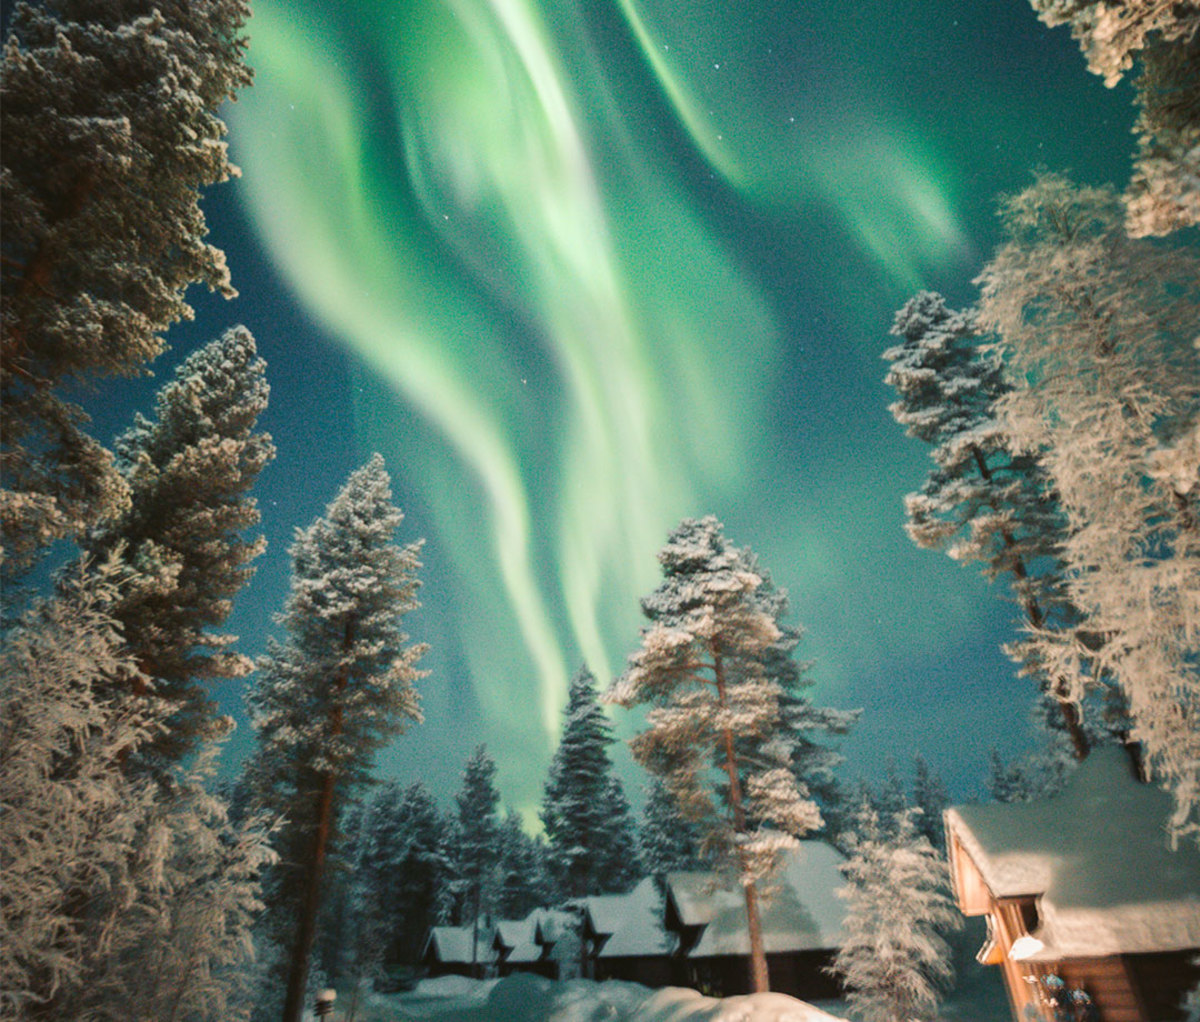 Northern lights at Aurora Village in Ivalo